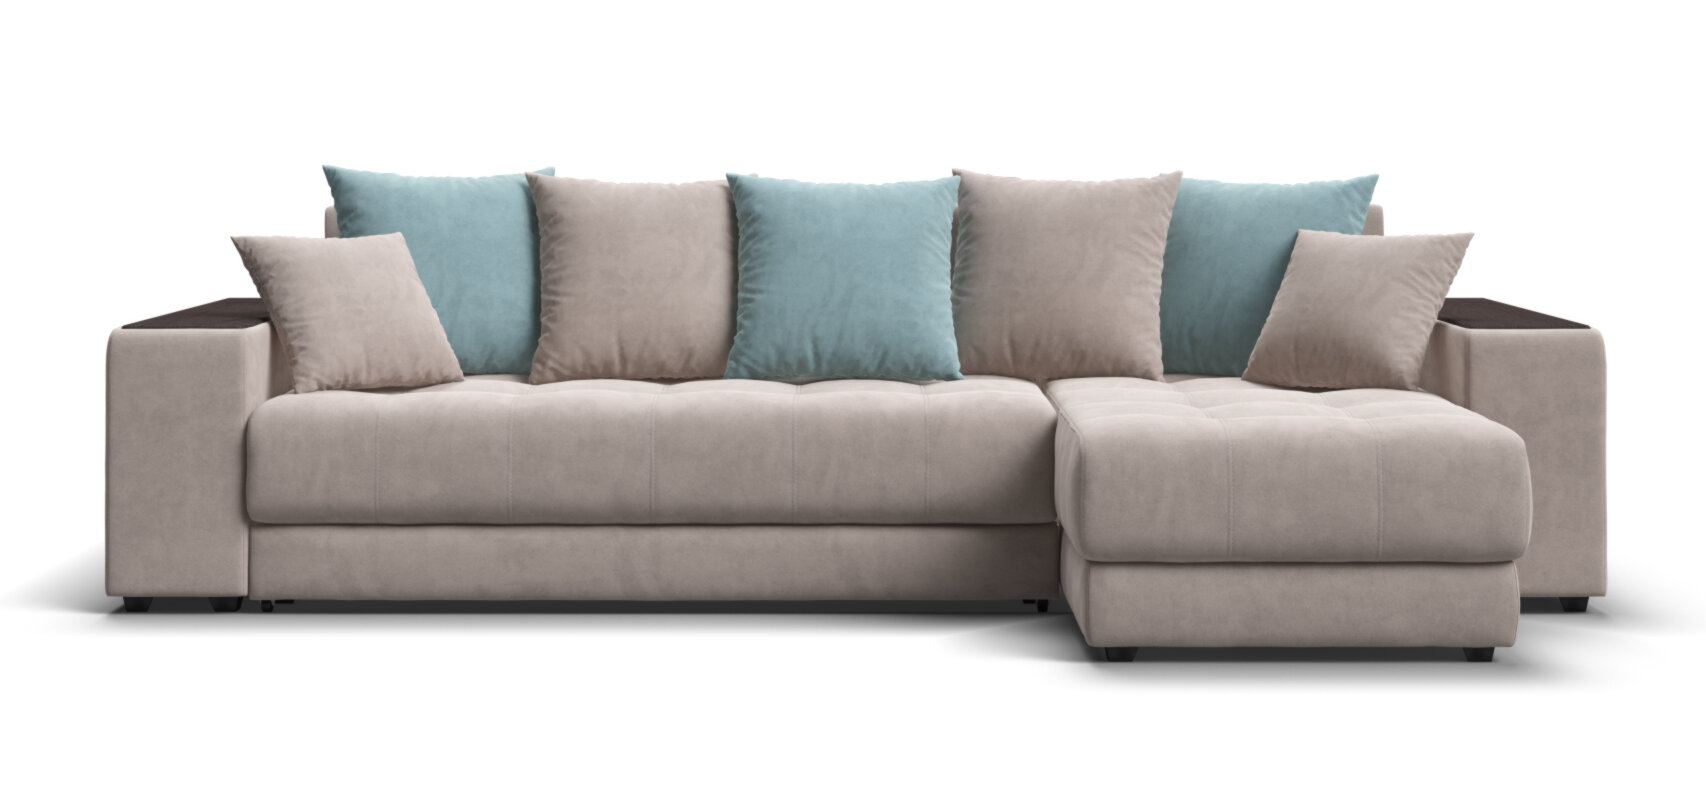 Угловой диван Много мебели Дубай 2.0, велюр Monolit латте/аква, 300x155x87 см